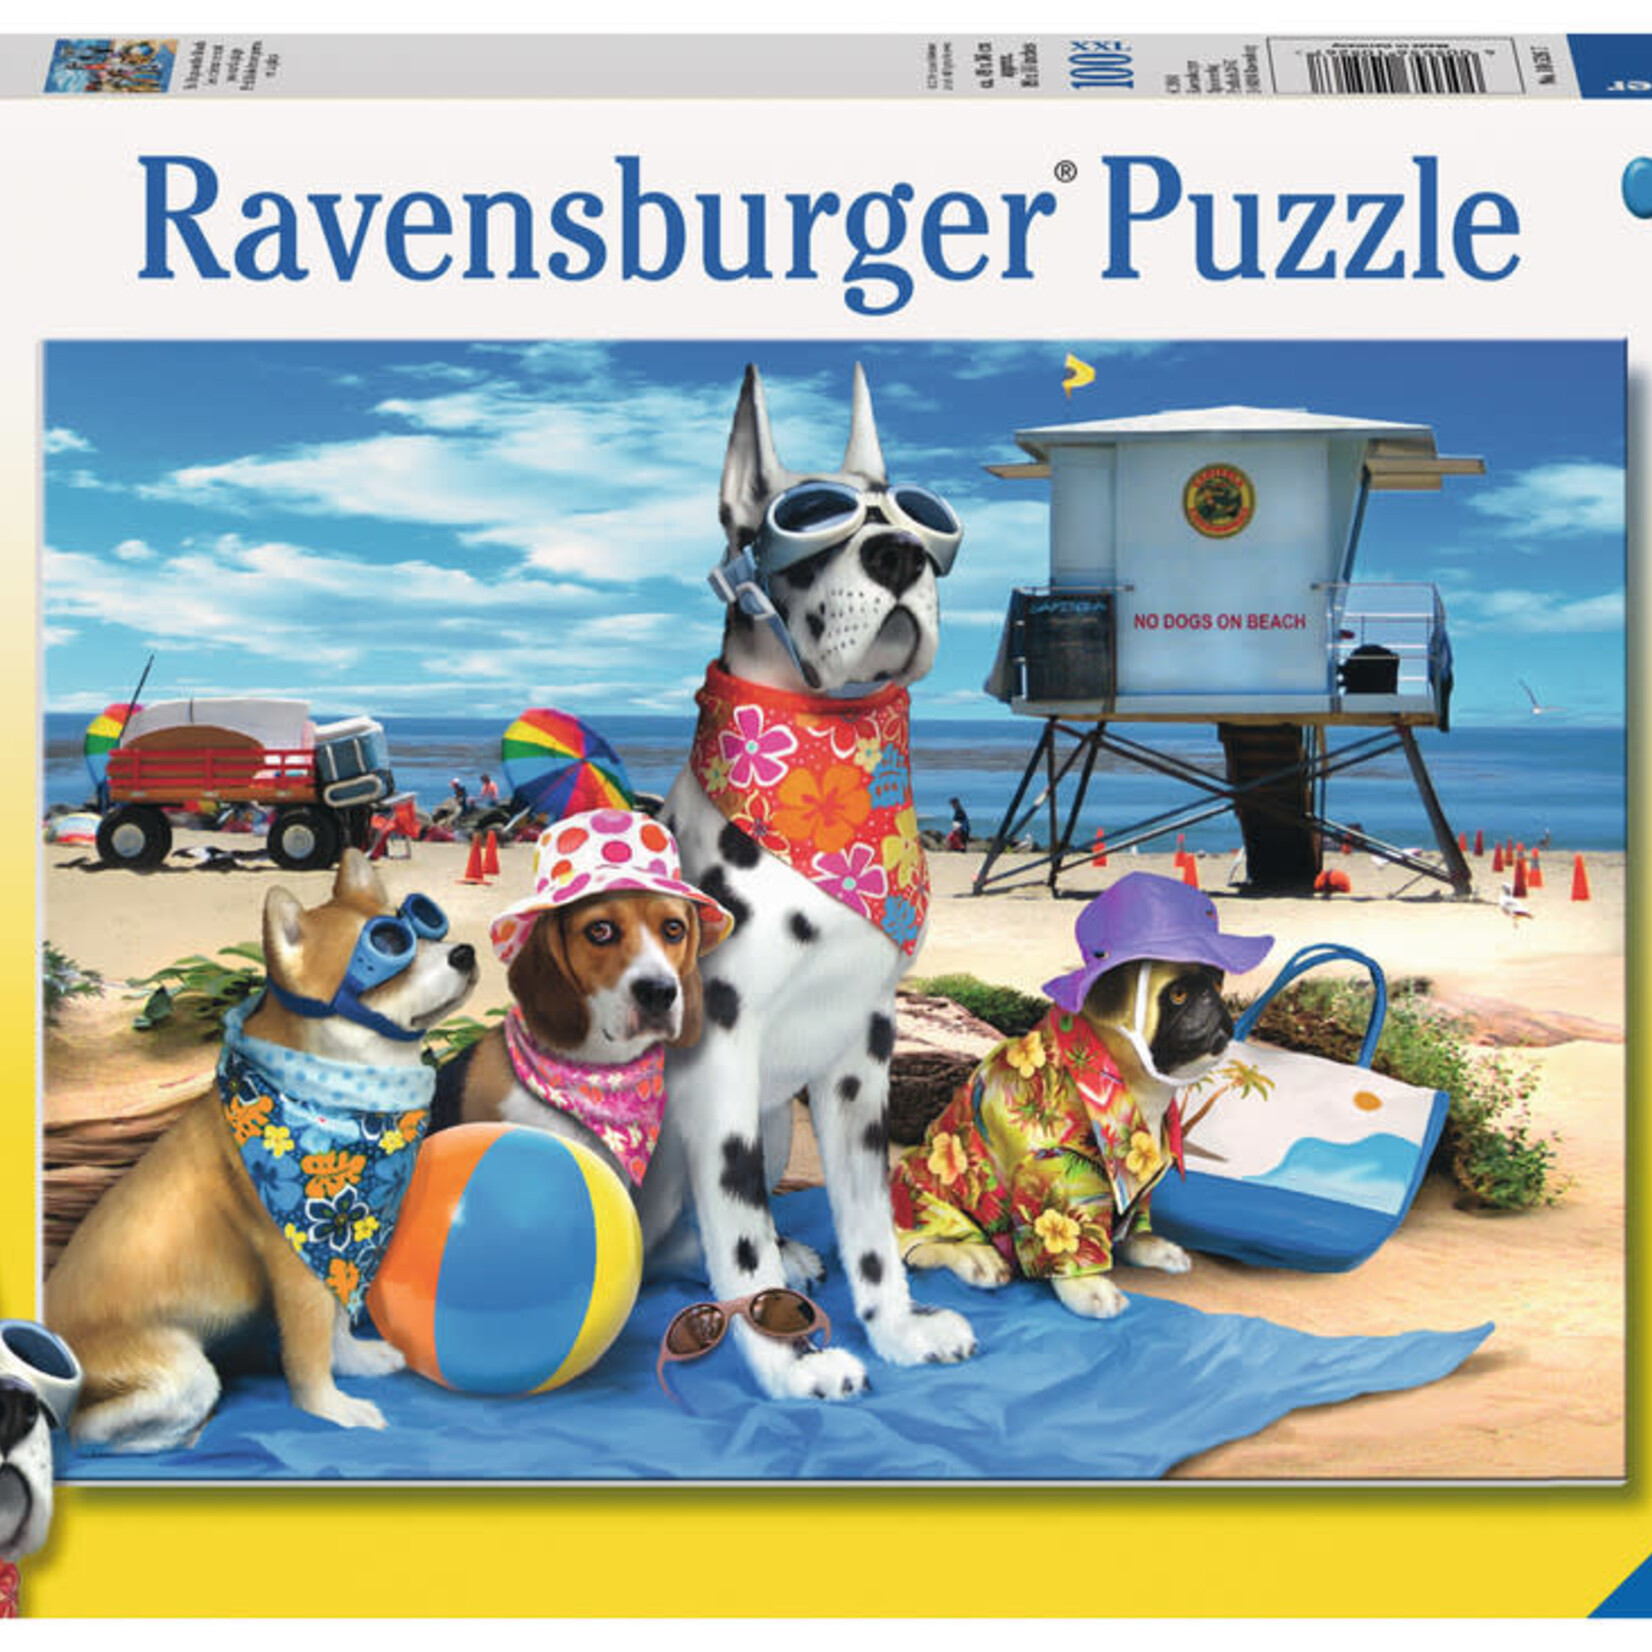 Ravensburger Ravensburger 100XXL : Les chiens ne sont pas sur la plage